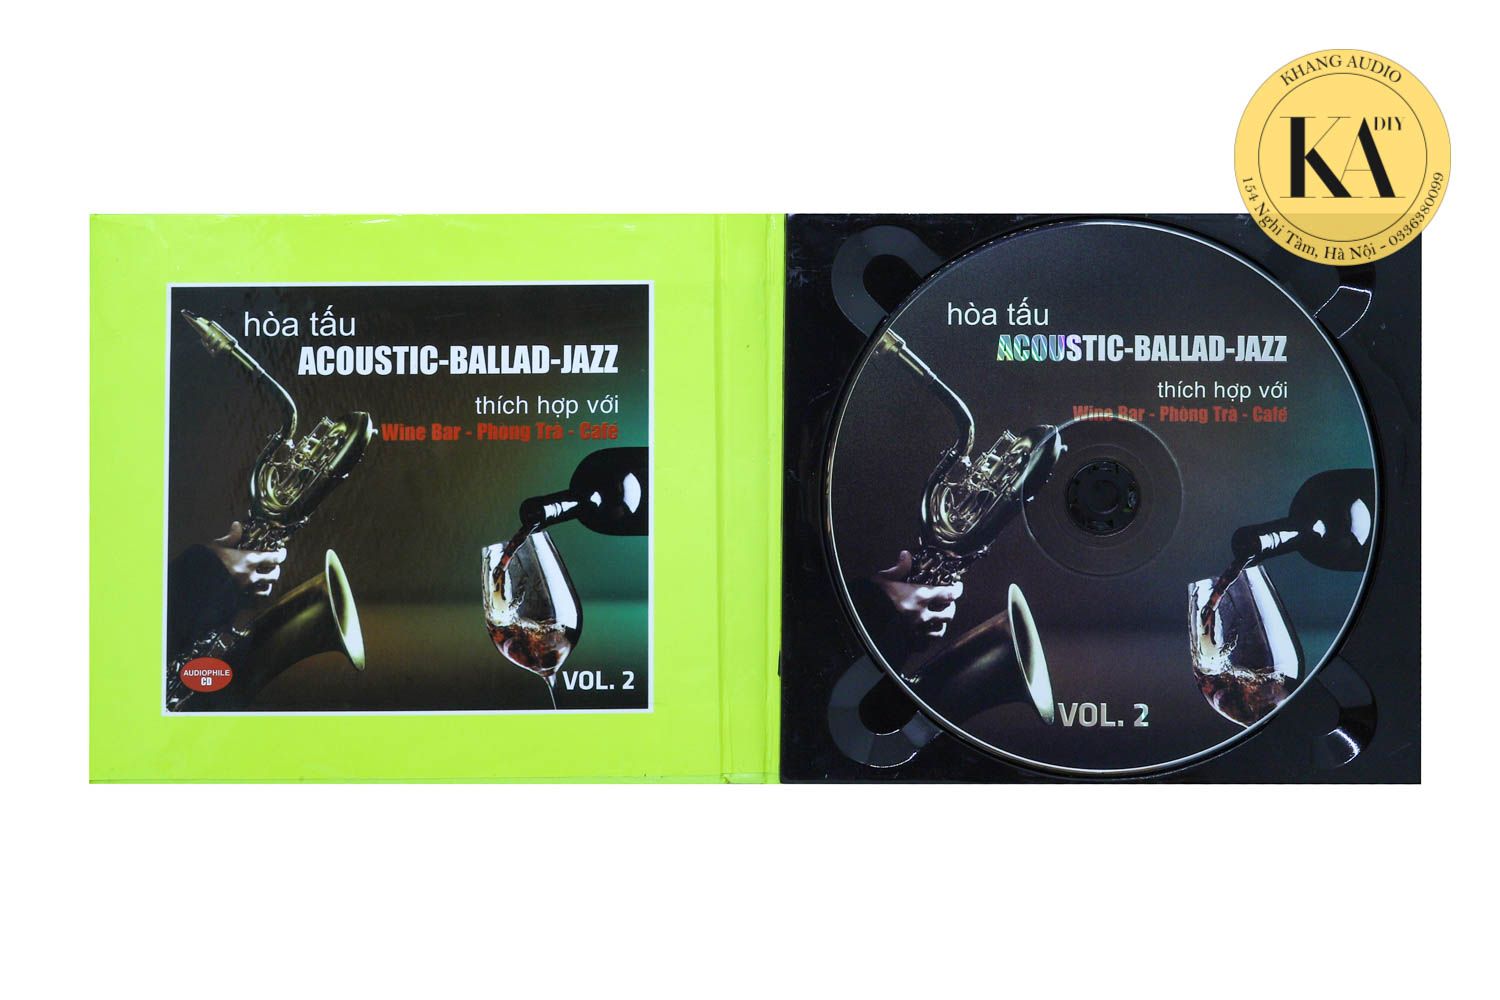 Hòa Tấu Acoustic - Ballad - Jazz Vol.2